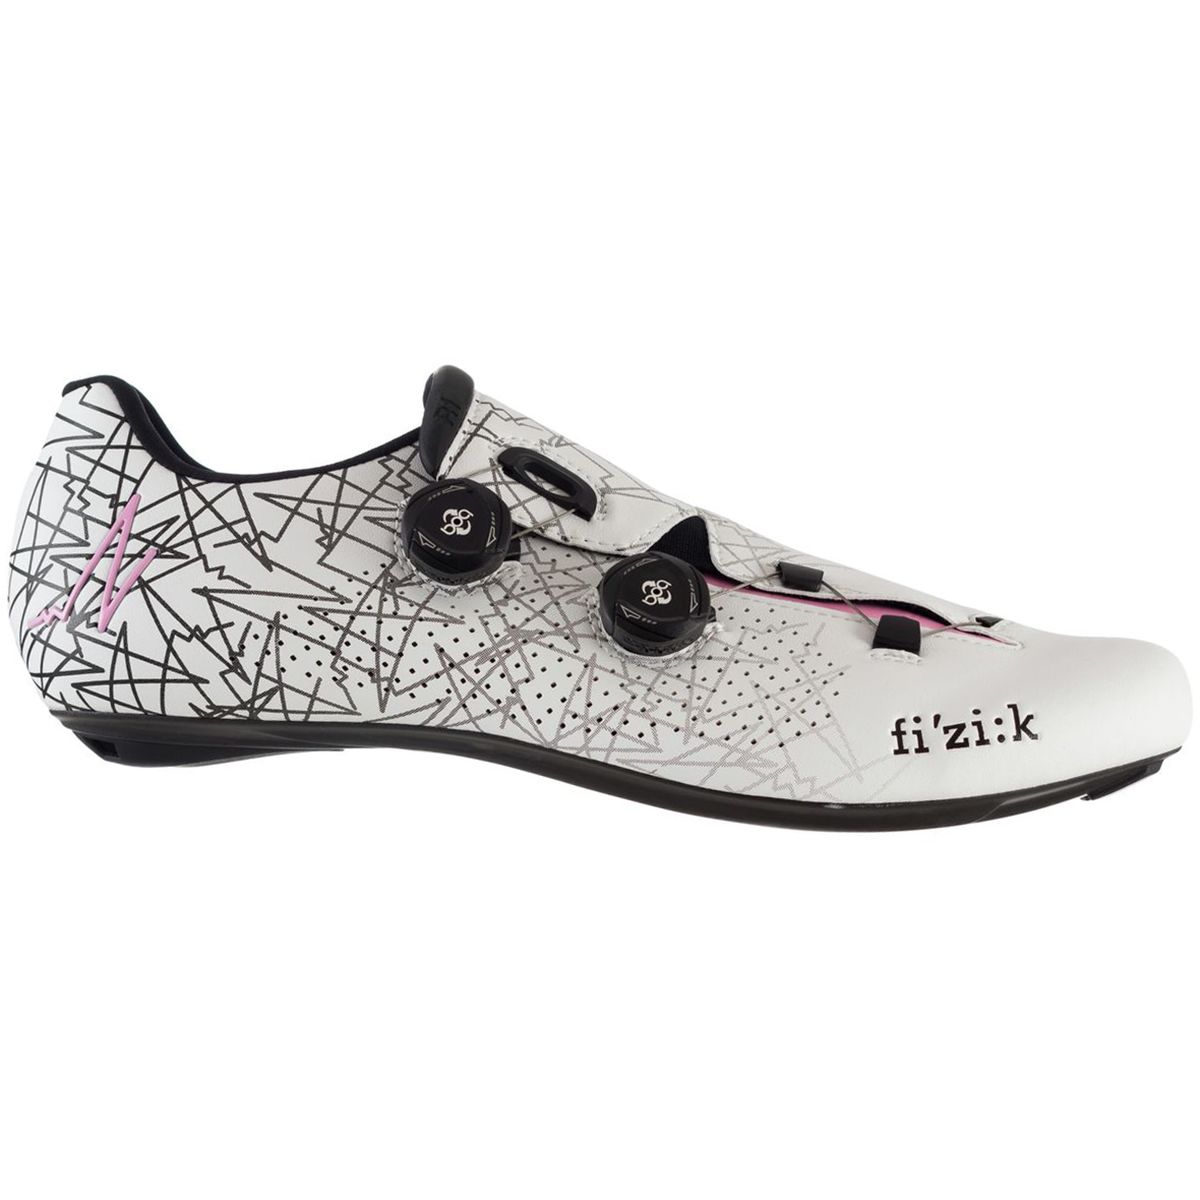 Fizik R1B Uomo Boa Limited Edition Giro Cycling Shoe Mens